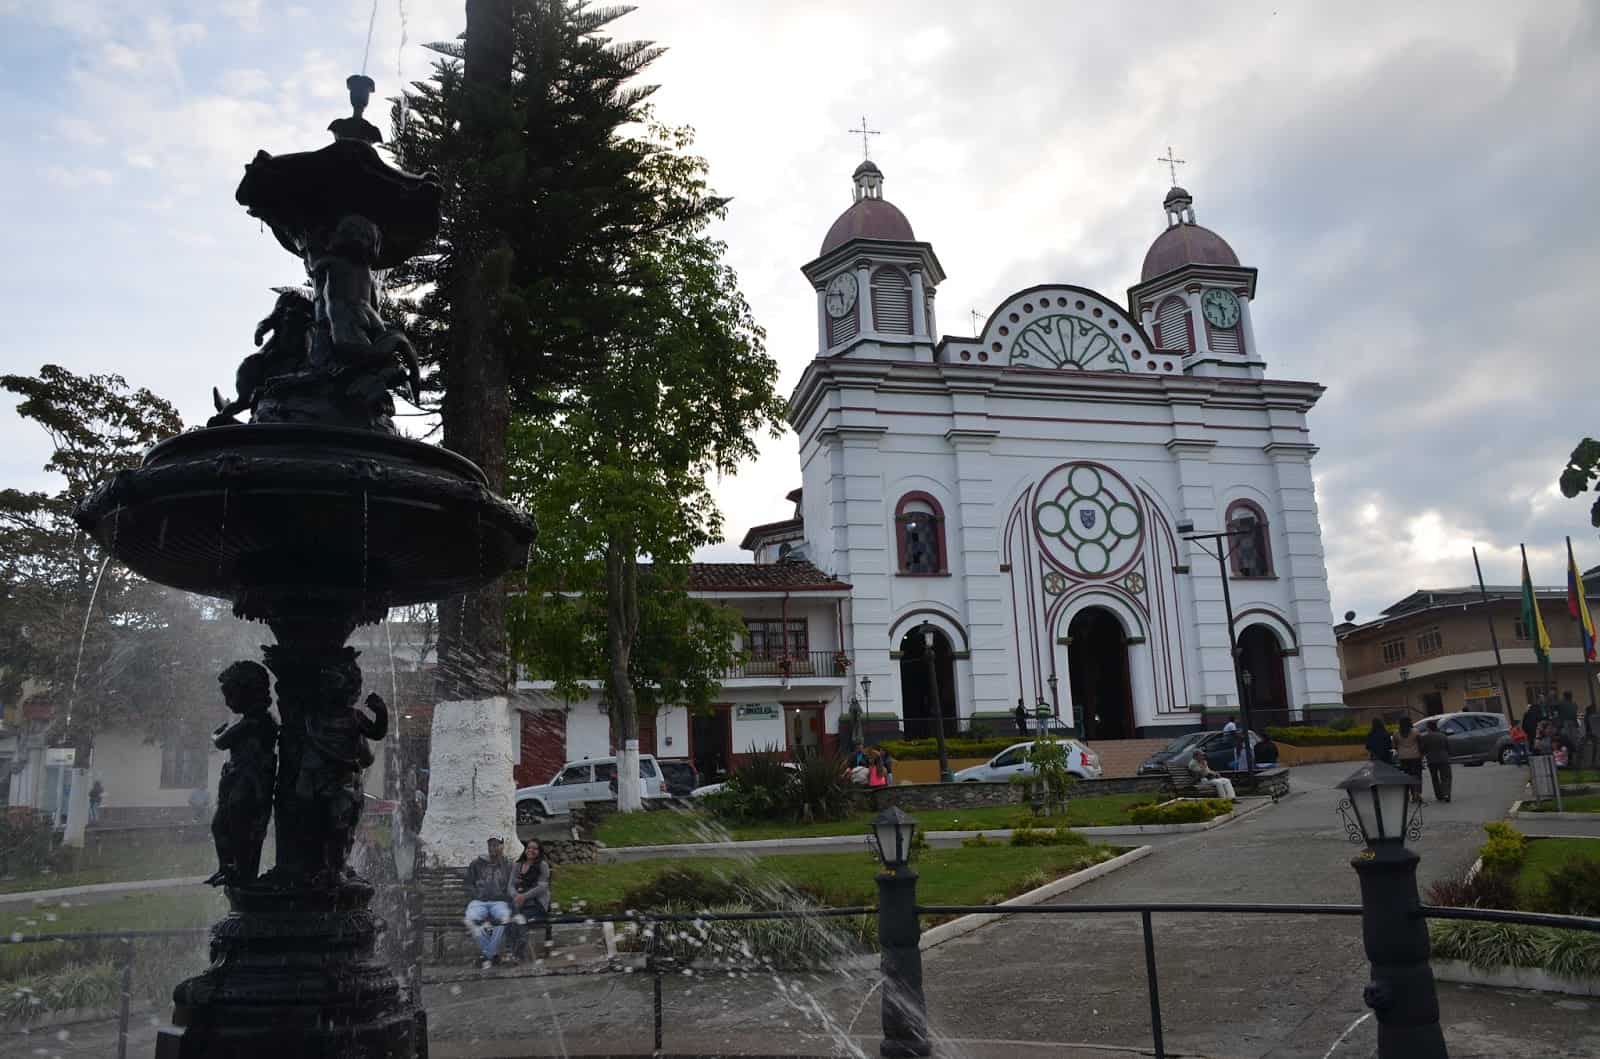 Fountain and church in Aguadas, Caldas, Colombia